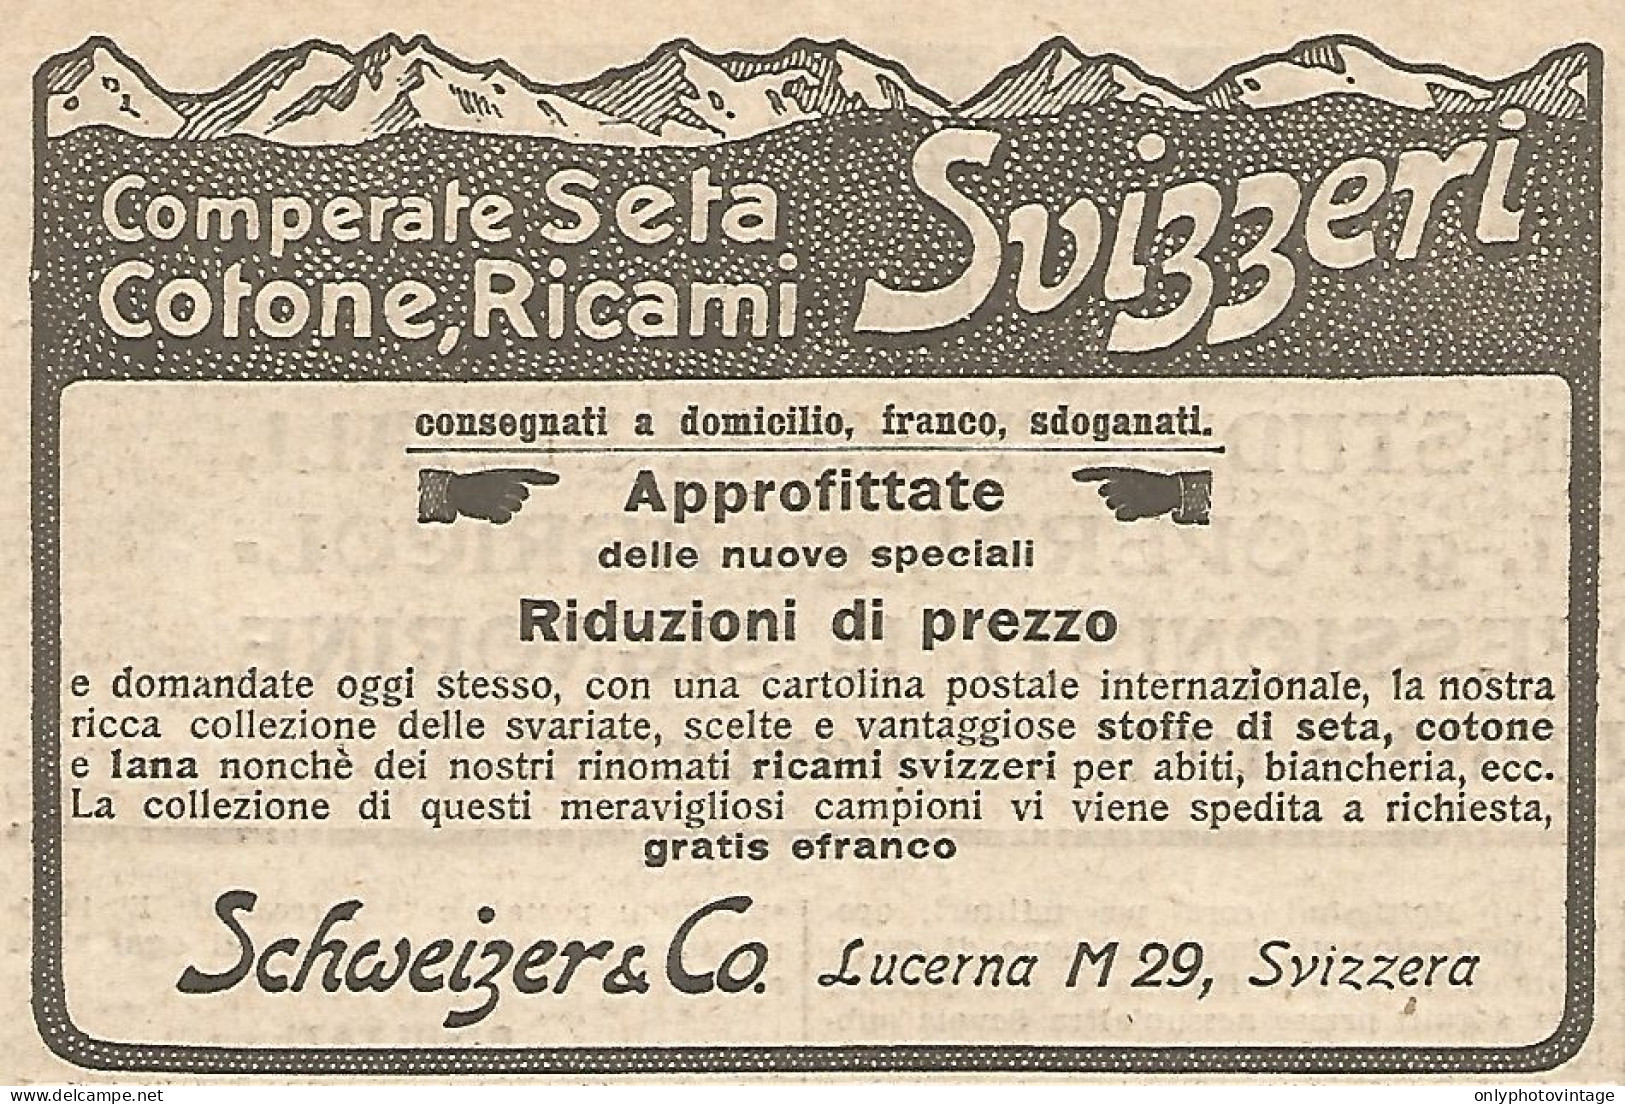 W1697 Comperate Seta Svizzera - Pubblicità Del 1926 - Old Advertising - Advertising